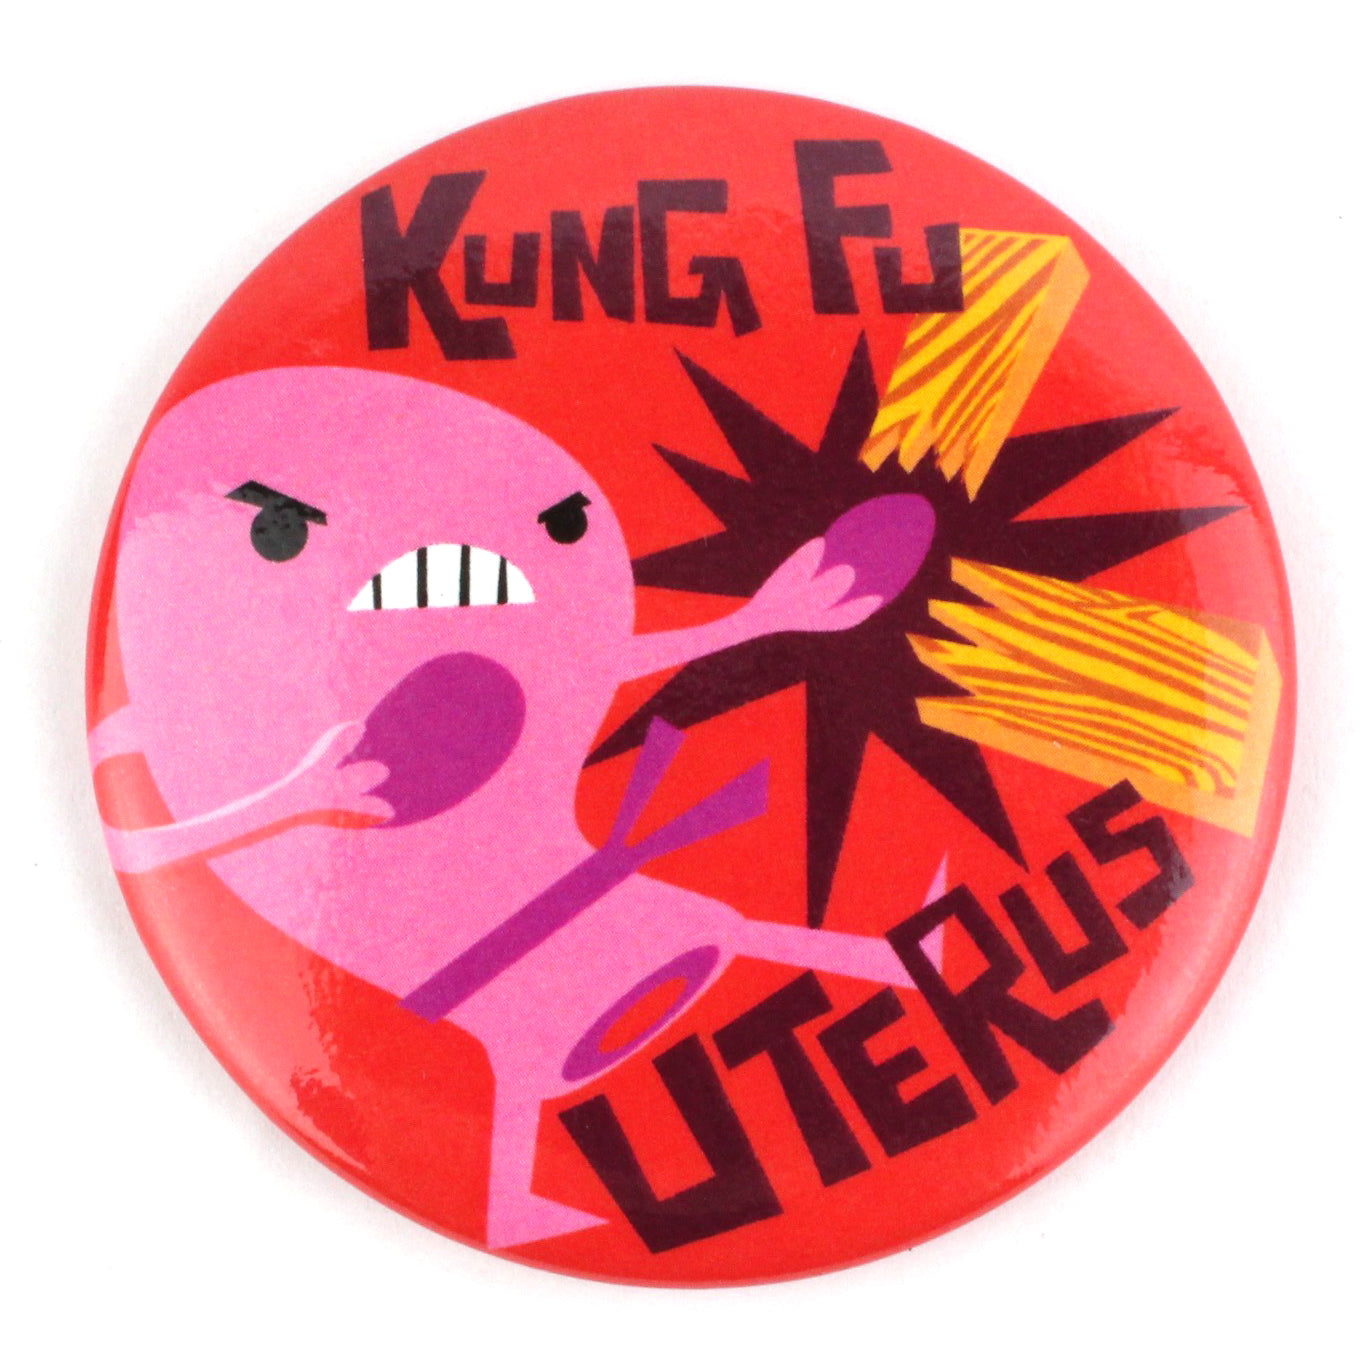 Kung Fu Uterus Magnet - I Heart Guts